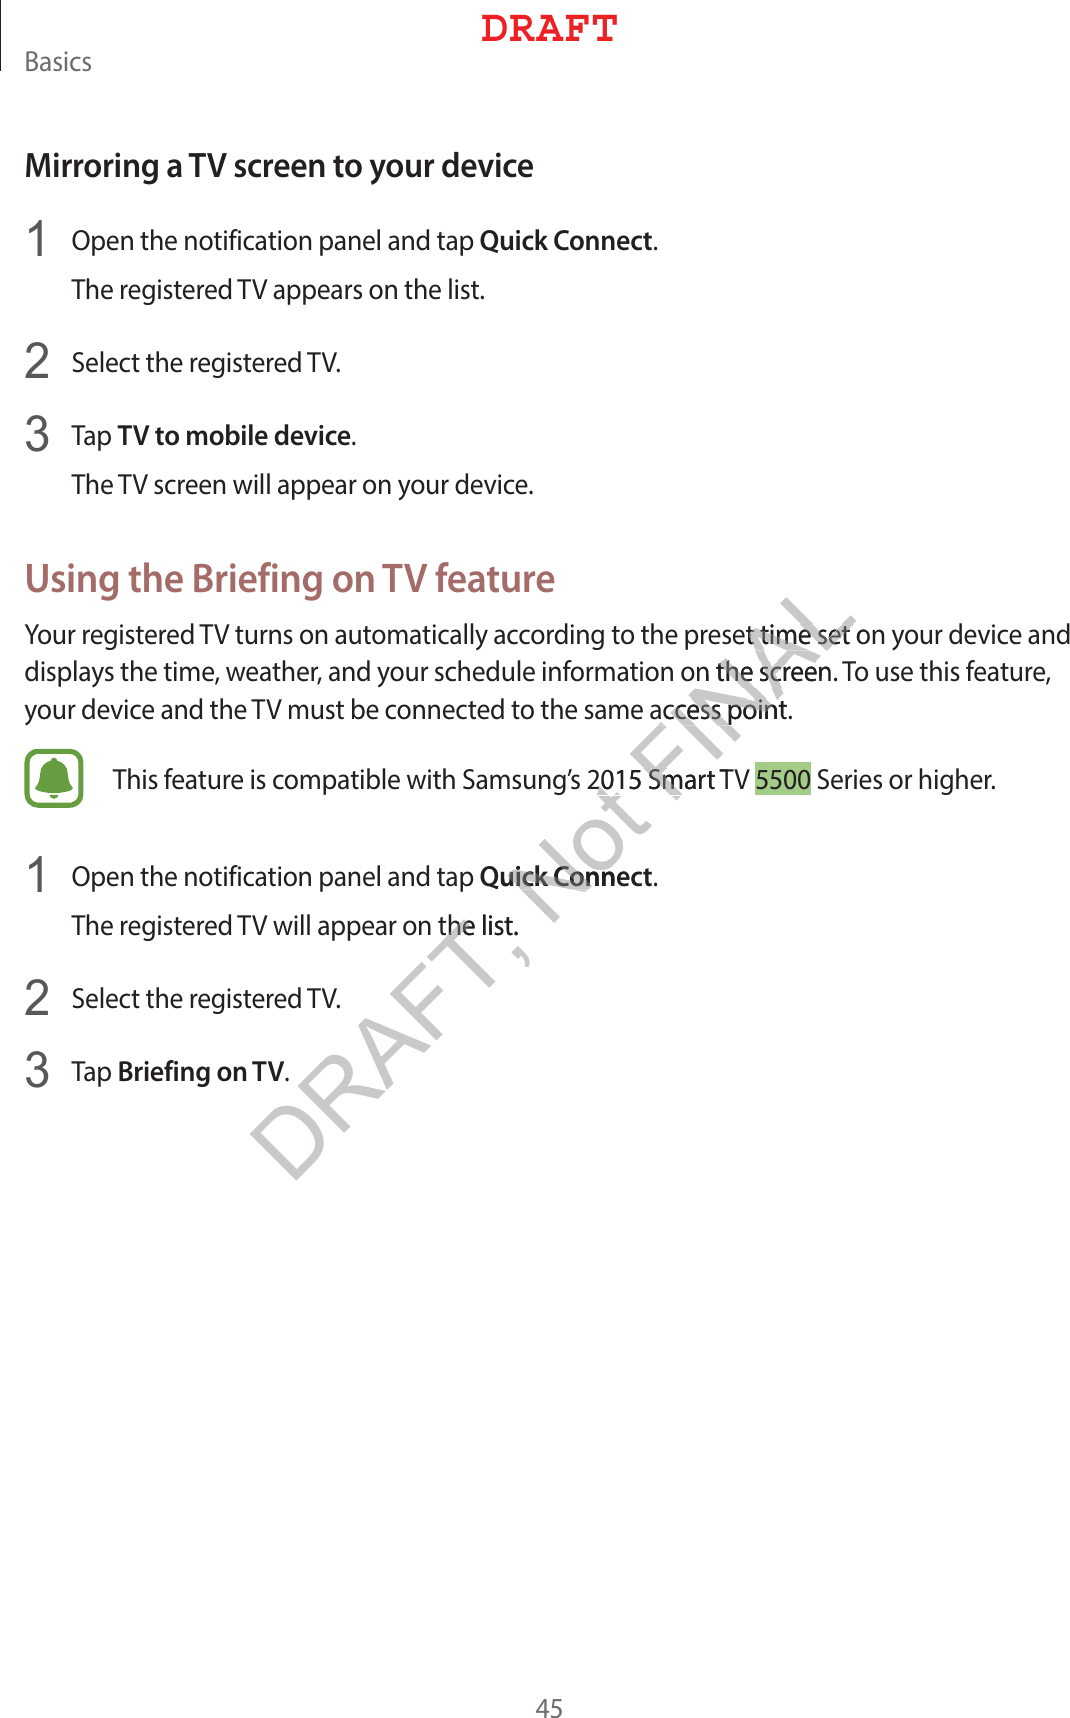 #BTJDTMirroring a TV screen to your device 0QFOUIFOPUJGJDBUJPOQBOFMBOEUBQQuick Connect5IFSFHJTUFSFE57BQQFBSTPOUIFMJTU 4FMFDUUIFSFHJTUFSFE57 5BQTV to mobile device5IF57TDSFFOXJMMBQQFBSPOZPVSEFWJDFUsing the Briefing on TV feature:PVSSFHJTUFSFE57UVSOTPOBVUPNBUJDBMMZBDDPSEJOHUPUIFQSFTFUUJNFTFUPOZPVSEFWJDFBOEEJTQMBZTUIFUJNFXFBUIFSBOEZPVSTDIFEVMFJOGPSNBUJPOPOUIFTDSFFO5PVTFUIJTGFBUVSFZPVSEFWJDFBOEUIF57NVTUCFDPOOFDUFEUPUIFTBNFBDDFTTQPJOU5IJTGFBUVSFJTDPNQBUJCMFXJUI4BNTVOHT4NBSU574FSJFTPSIJHIFS 0QFOUIFOPUJGJDBUJPOQBOFMBOEUBQQuick Connect5IFSFHJTUFSFE57XJMMBQQFBSPOUIFMJTU 4FMFDUUIFSFHJTUFSFE57 5BQBriefing on TV%3&quot;&apos;5DRAFT, Not FINALFUUJNFTFUPUUJNFTFUOUIFTDSFFOUIFTDSFFBDDFTTQPJOUBDDFTTQPJOU4NBSU54NQuick Conneuick ConnUIFMJTUUIF